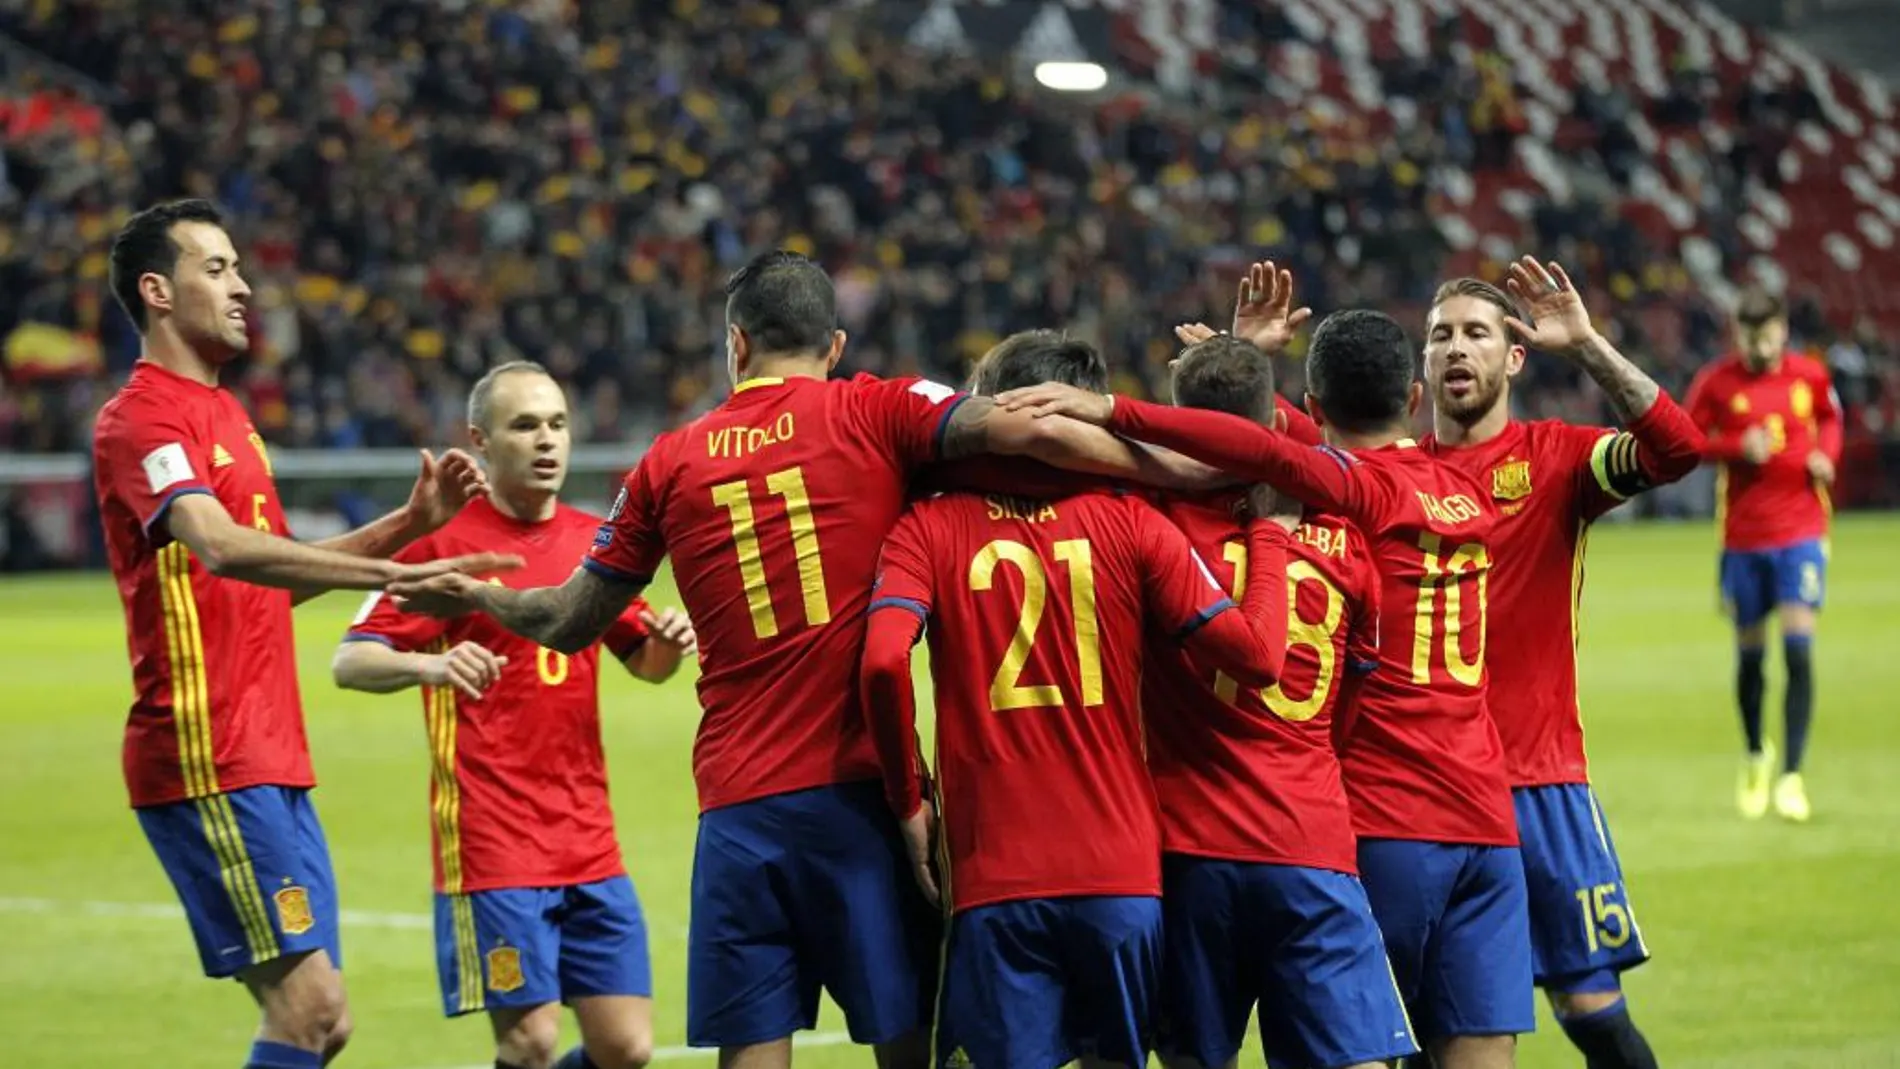 Los jugadores de la selección española de fútbol celebran tras marcar ante Israel, durante el partido clasificatorio para el Mundial de Rusia 2018 disputado esta noche en el estadio de El Molinón, en Gijón.